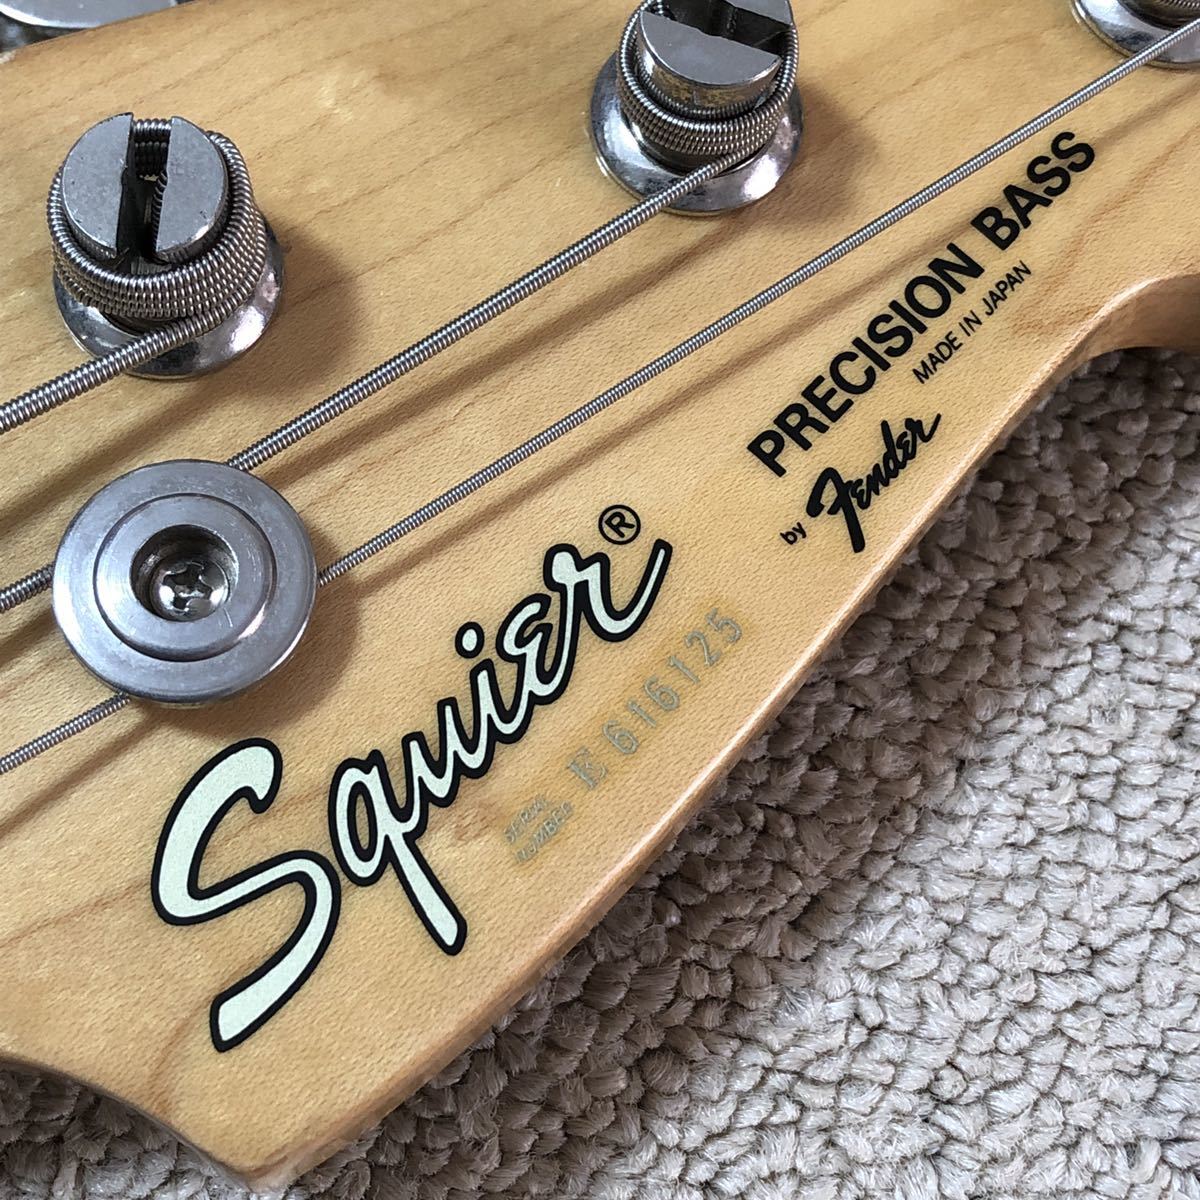 1986年製 Squier PB-331 ミディアムスケール 日本製 プレベ Eシリアル フジゲン スクワイヤー Fender Precision  Bass Made in Japan